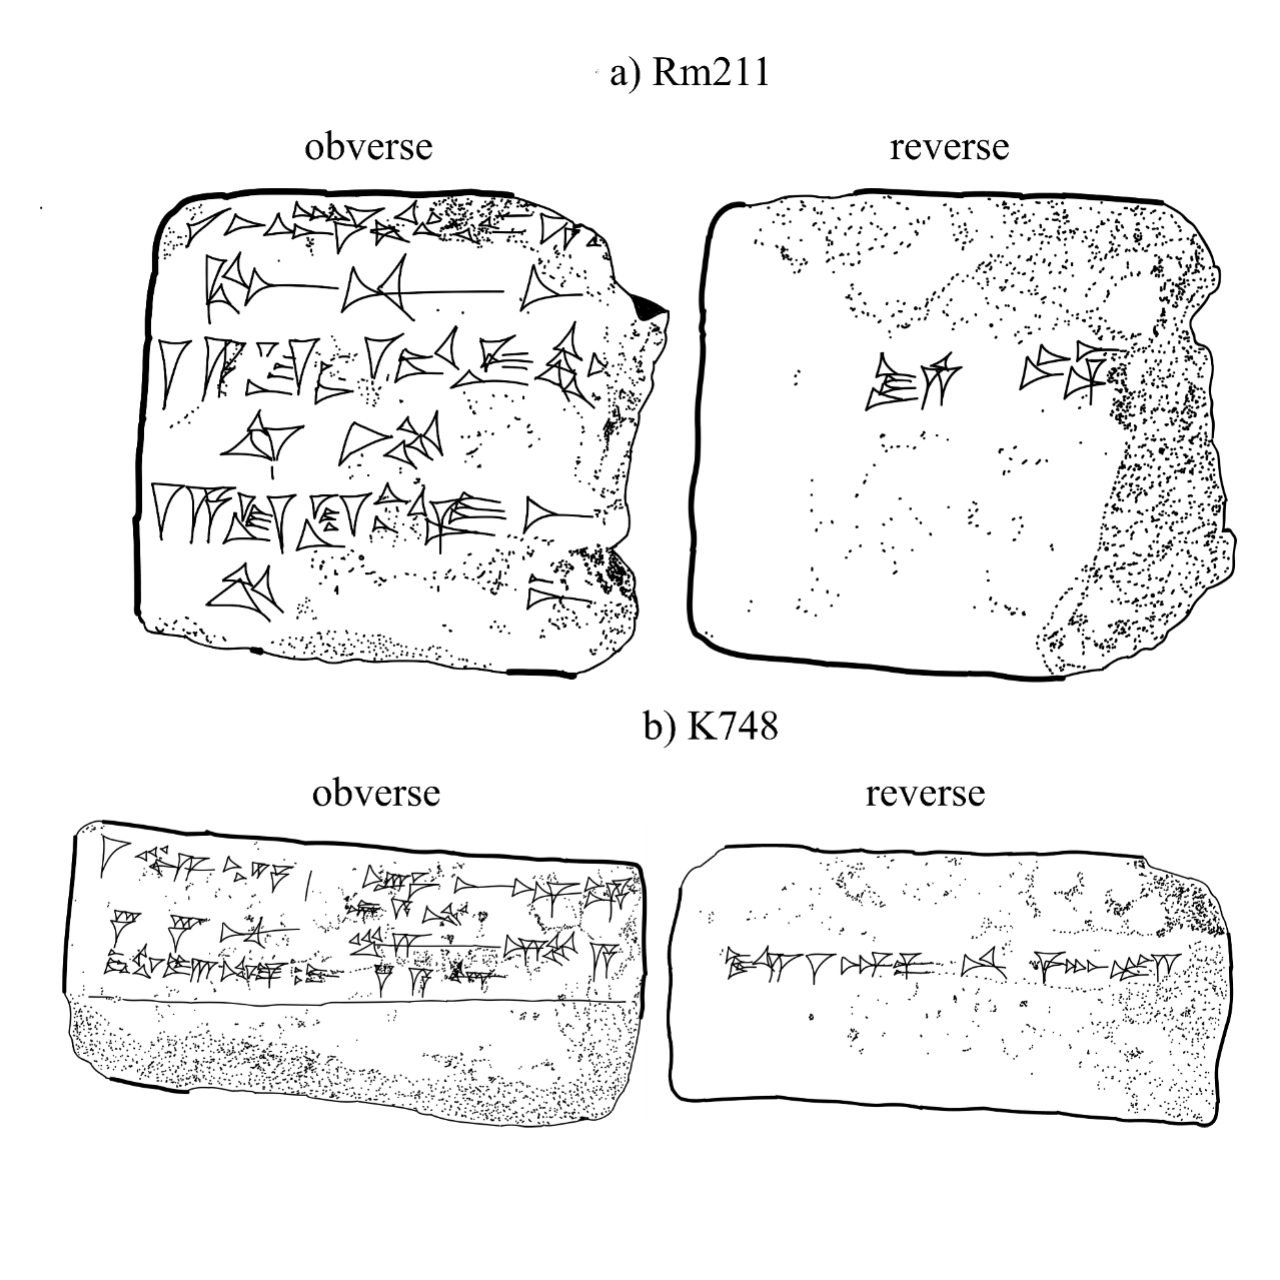 La tempête solaire qui s'est produite il y a 2,700 4 ans a été documentée dans les tablettes assyriennes XNUMX